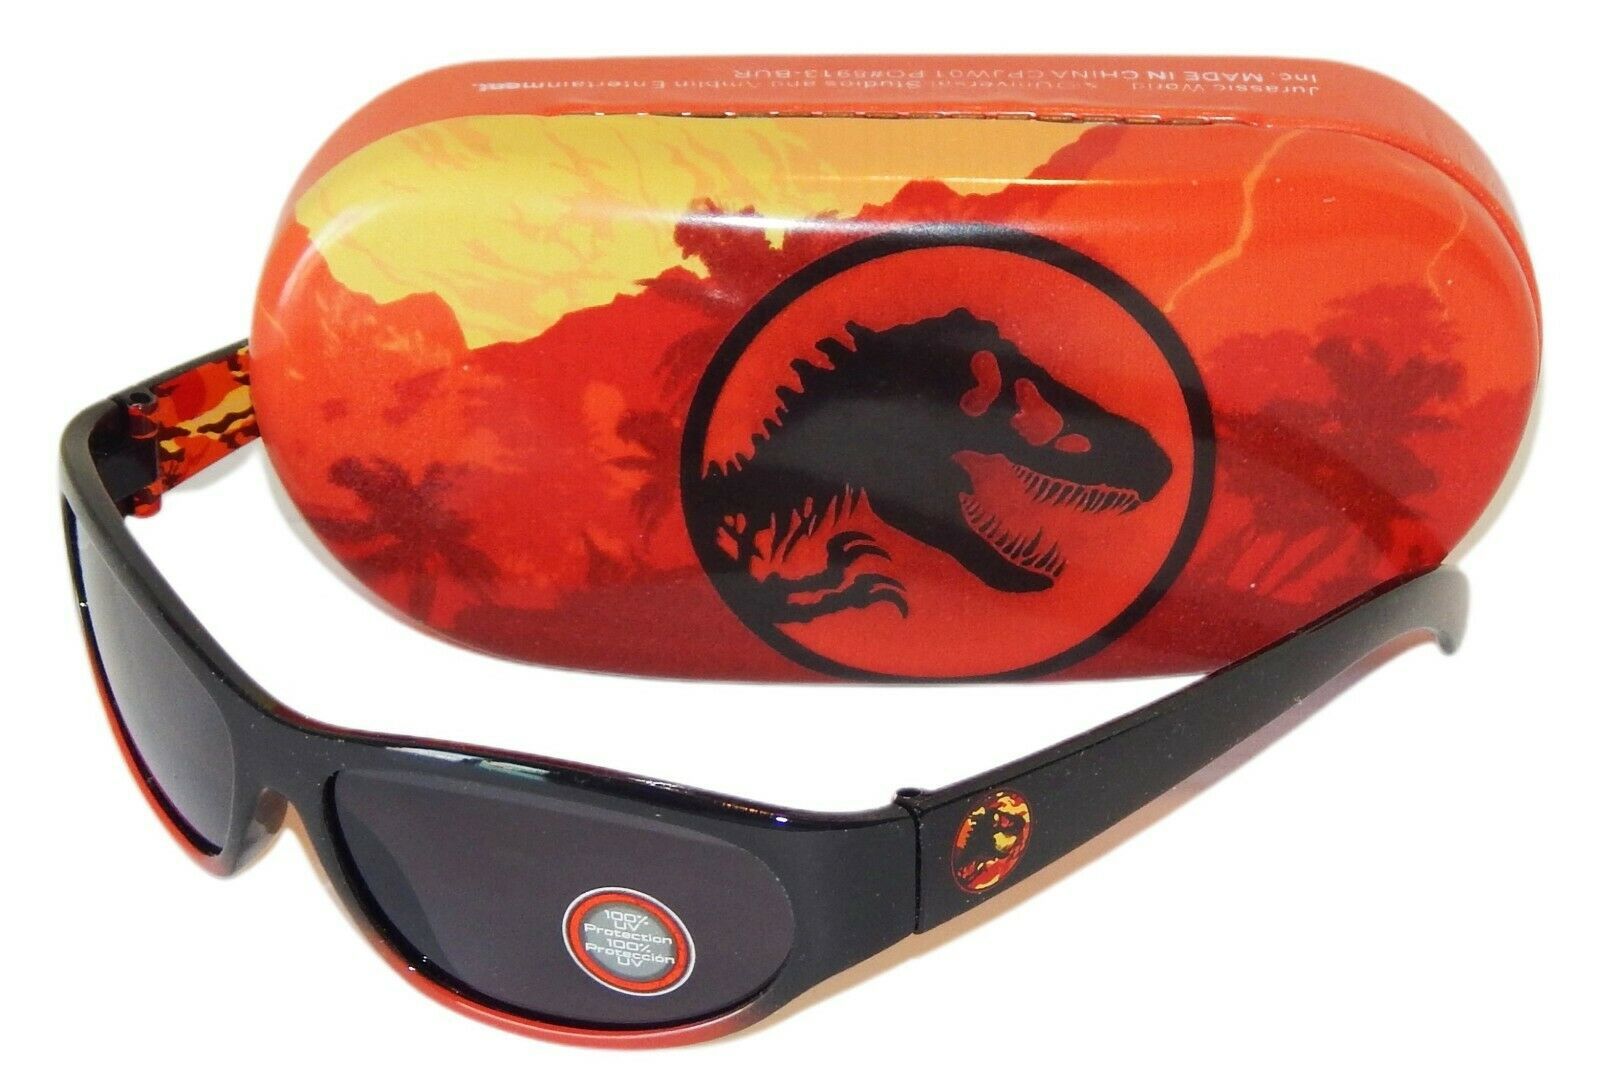 Universal Studios - Jurassic world 100%uv shatter resistant sunglasses & hard case packaged gift set